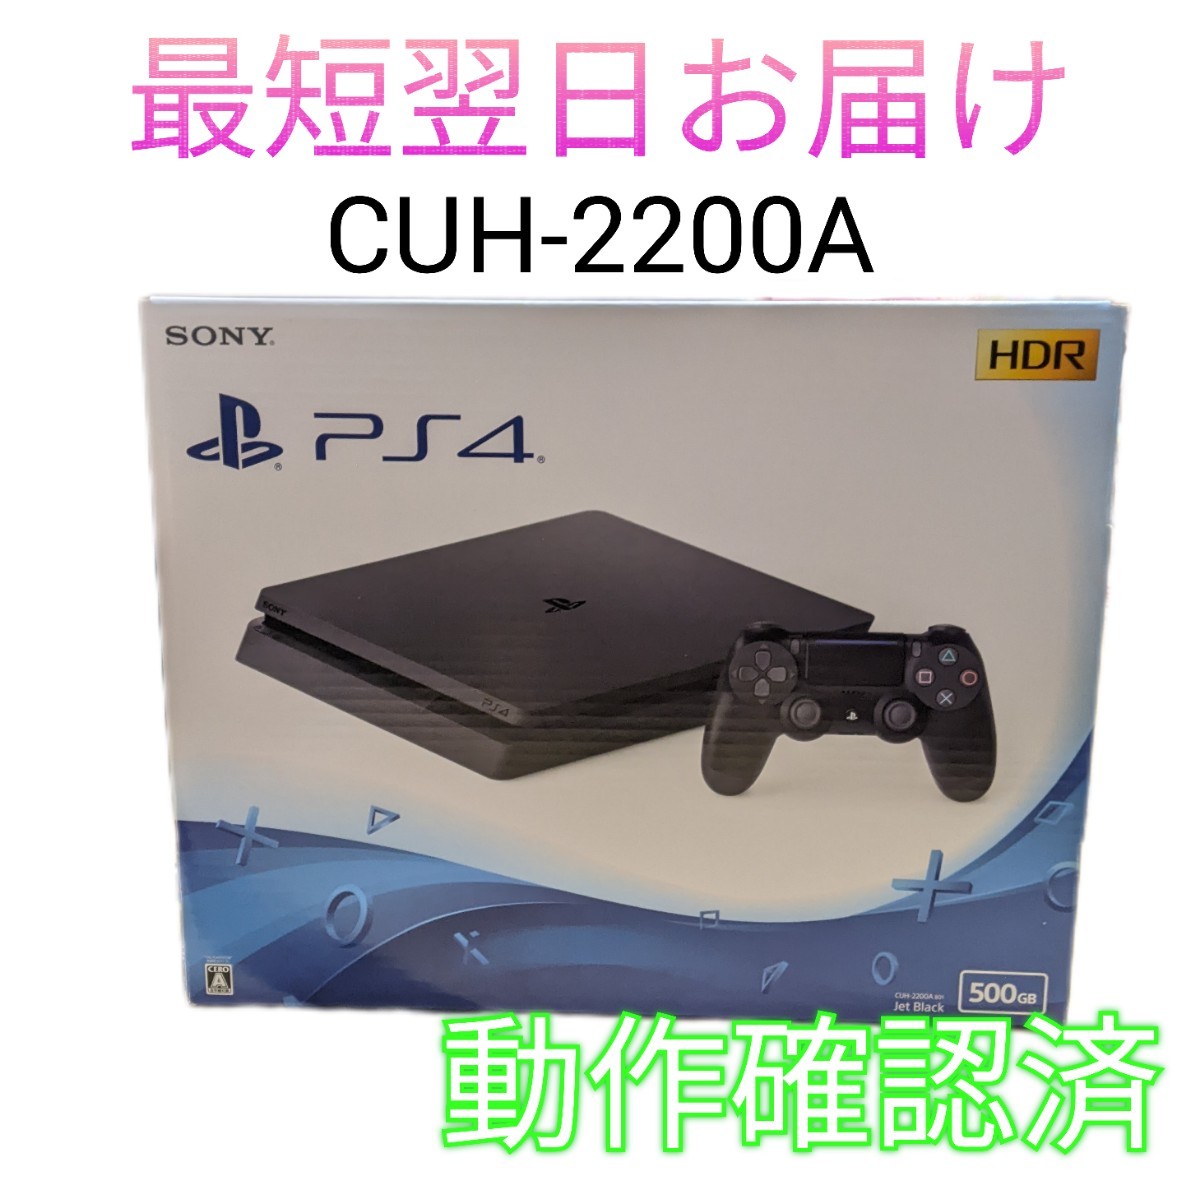 【中古】SONY PS4 本体 CUH-2200A 500GB ジェット・ブラック コントローラー付き プレステ 最短翌日お届け